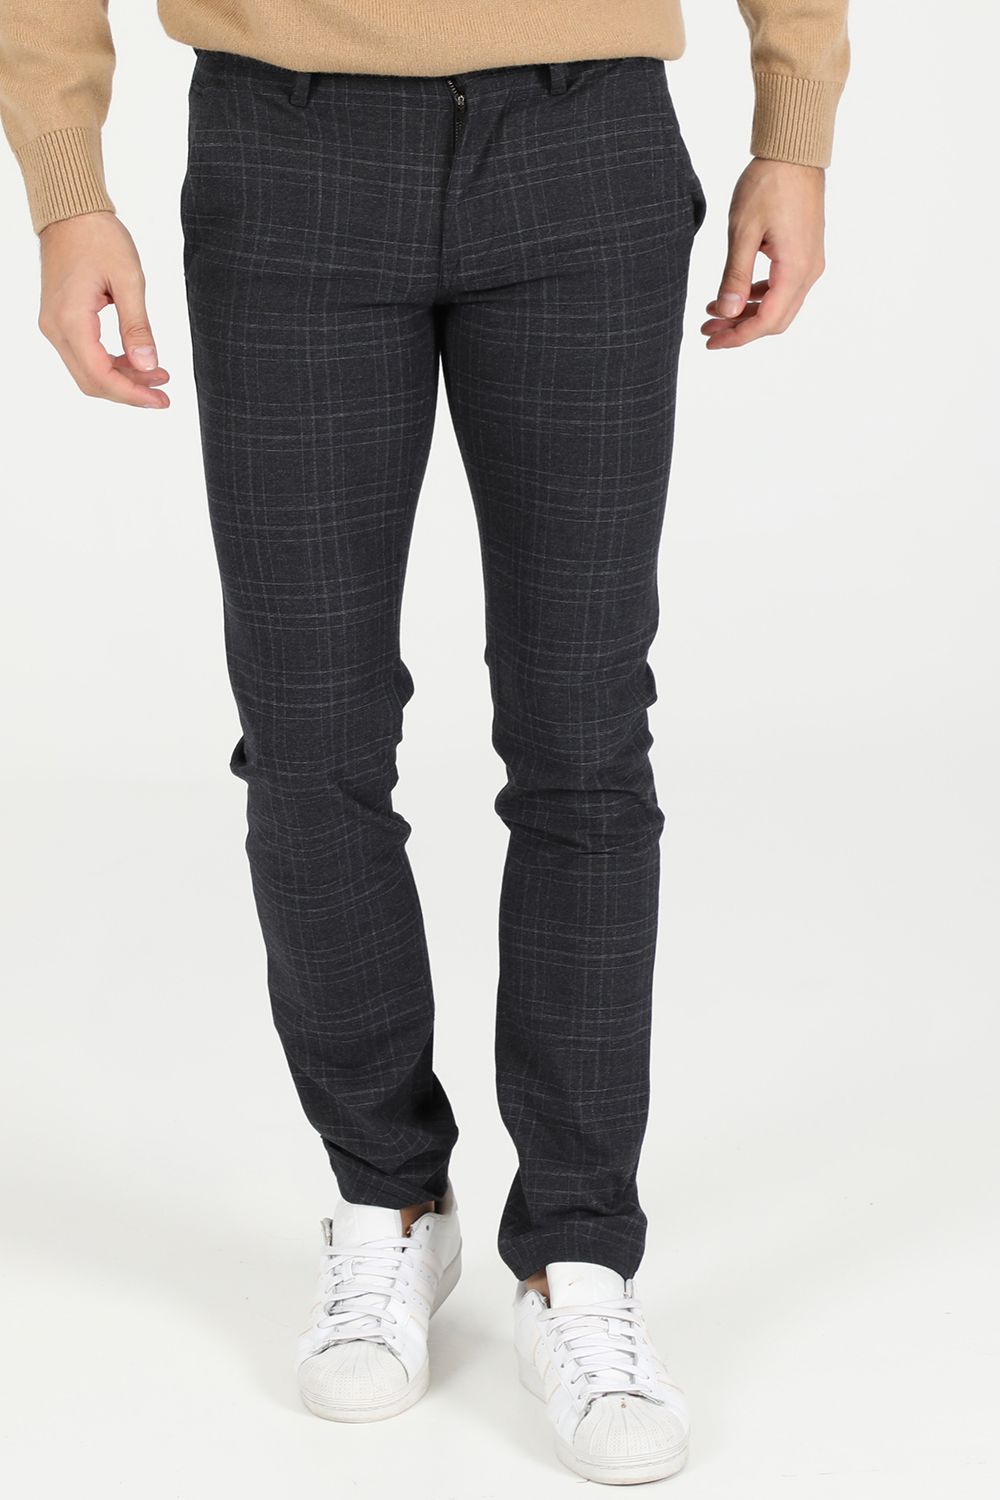 Ανδρικά/Ρούχα/Παντελόνια/Ισια Γραμμή BOSS - Ανδρικό παντελόνι Boss Schino-Slim μαύρο